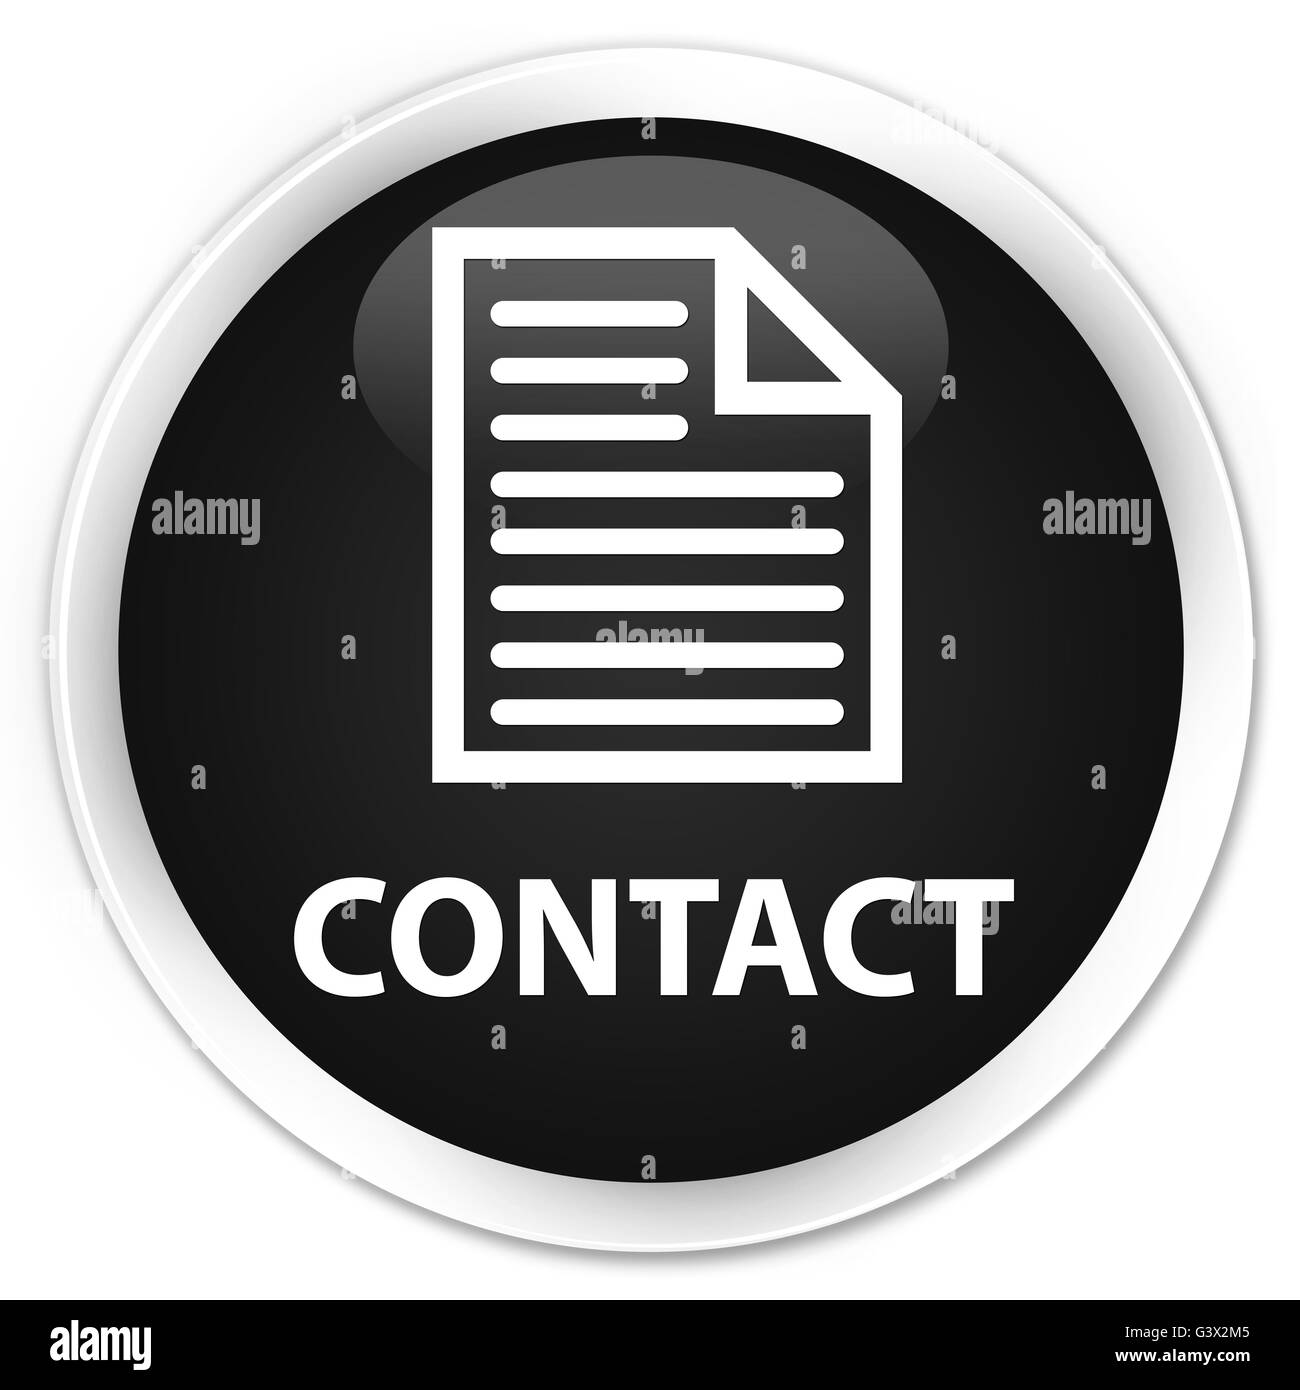 Contact (icône de page) isolé sur le bouton rond noir premium abstract illustration Banque D'Images